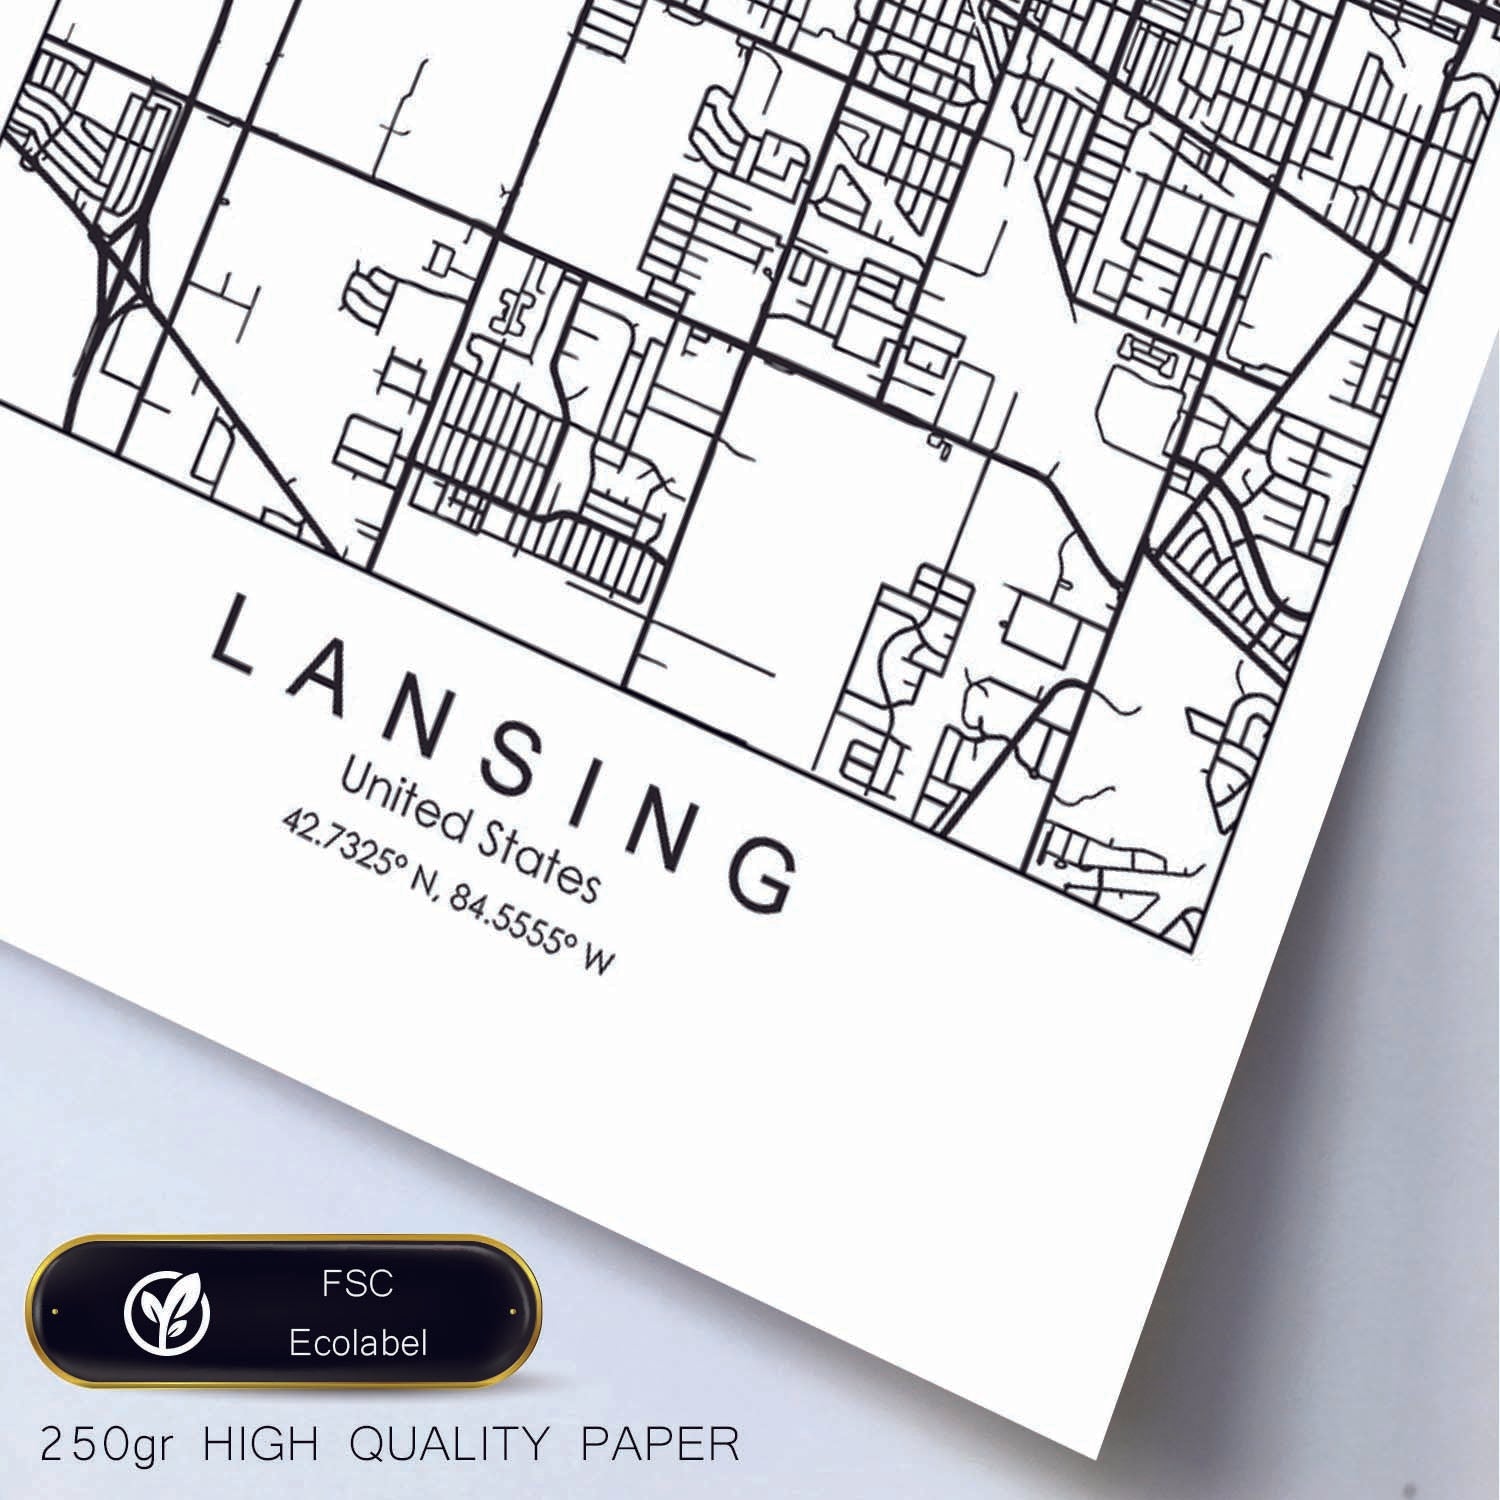 Poster con mapa de Lansing. Lámina de Estados Unidos, con imágenes de mapas y carreteras-Artwork-Nacnic-Nacnic Estudio SL